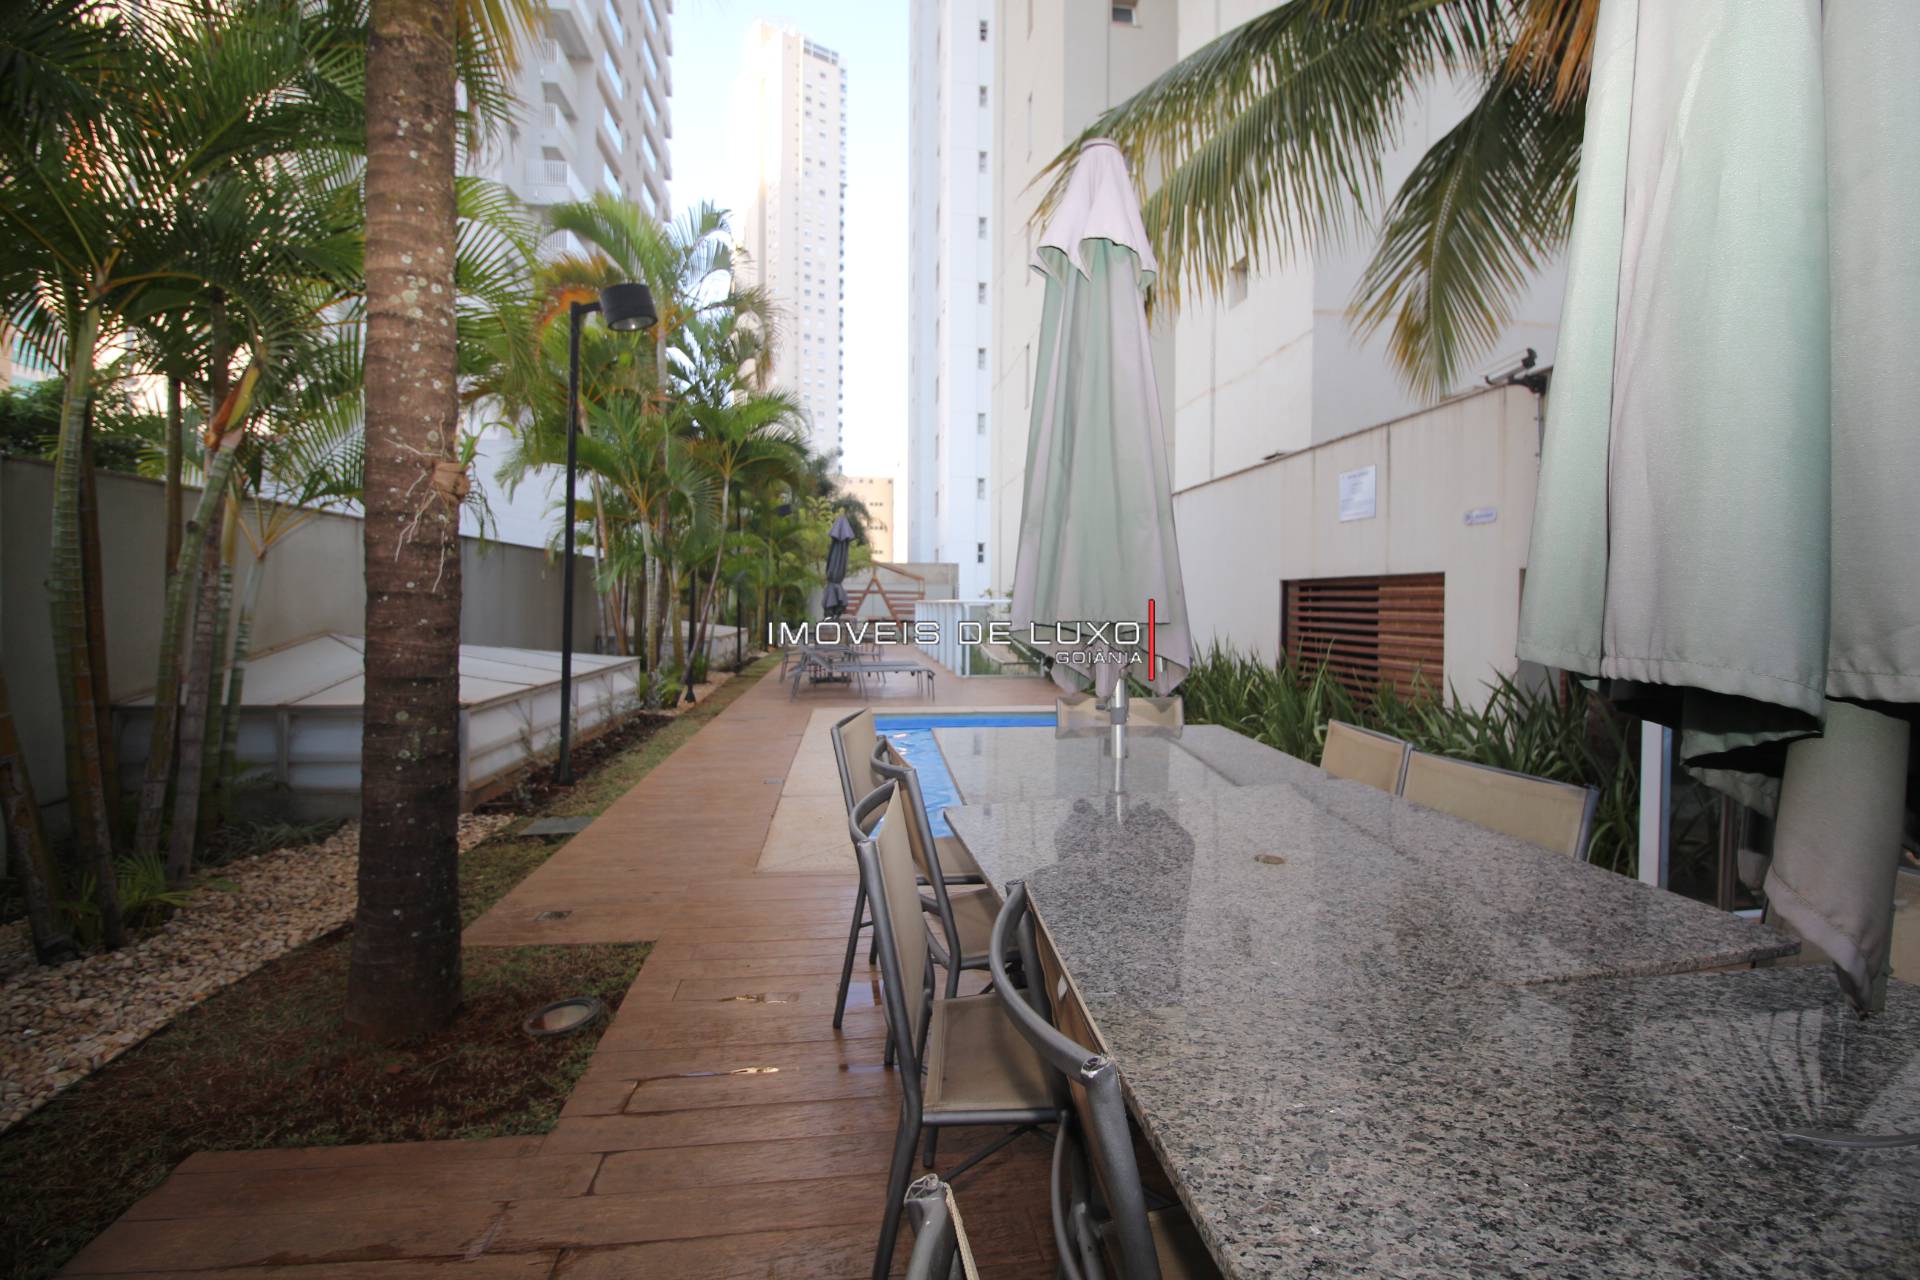 Imóveis de Luxo - Apartamento 4 suítes em frente ao parque Areião